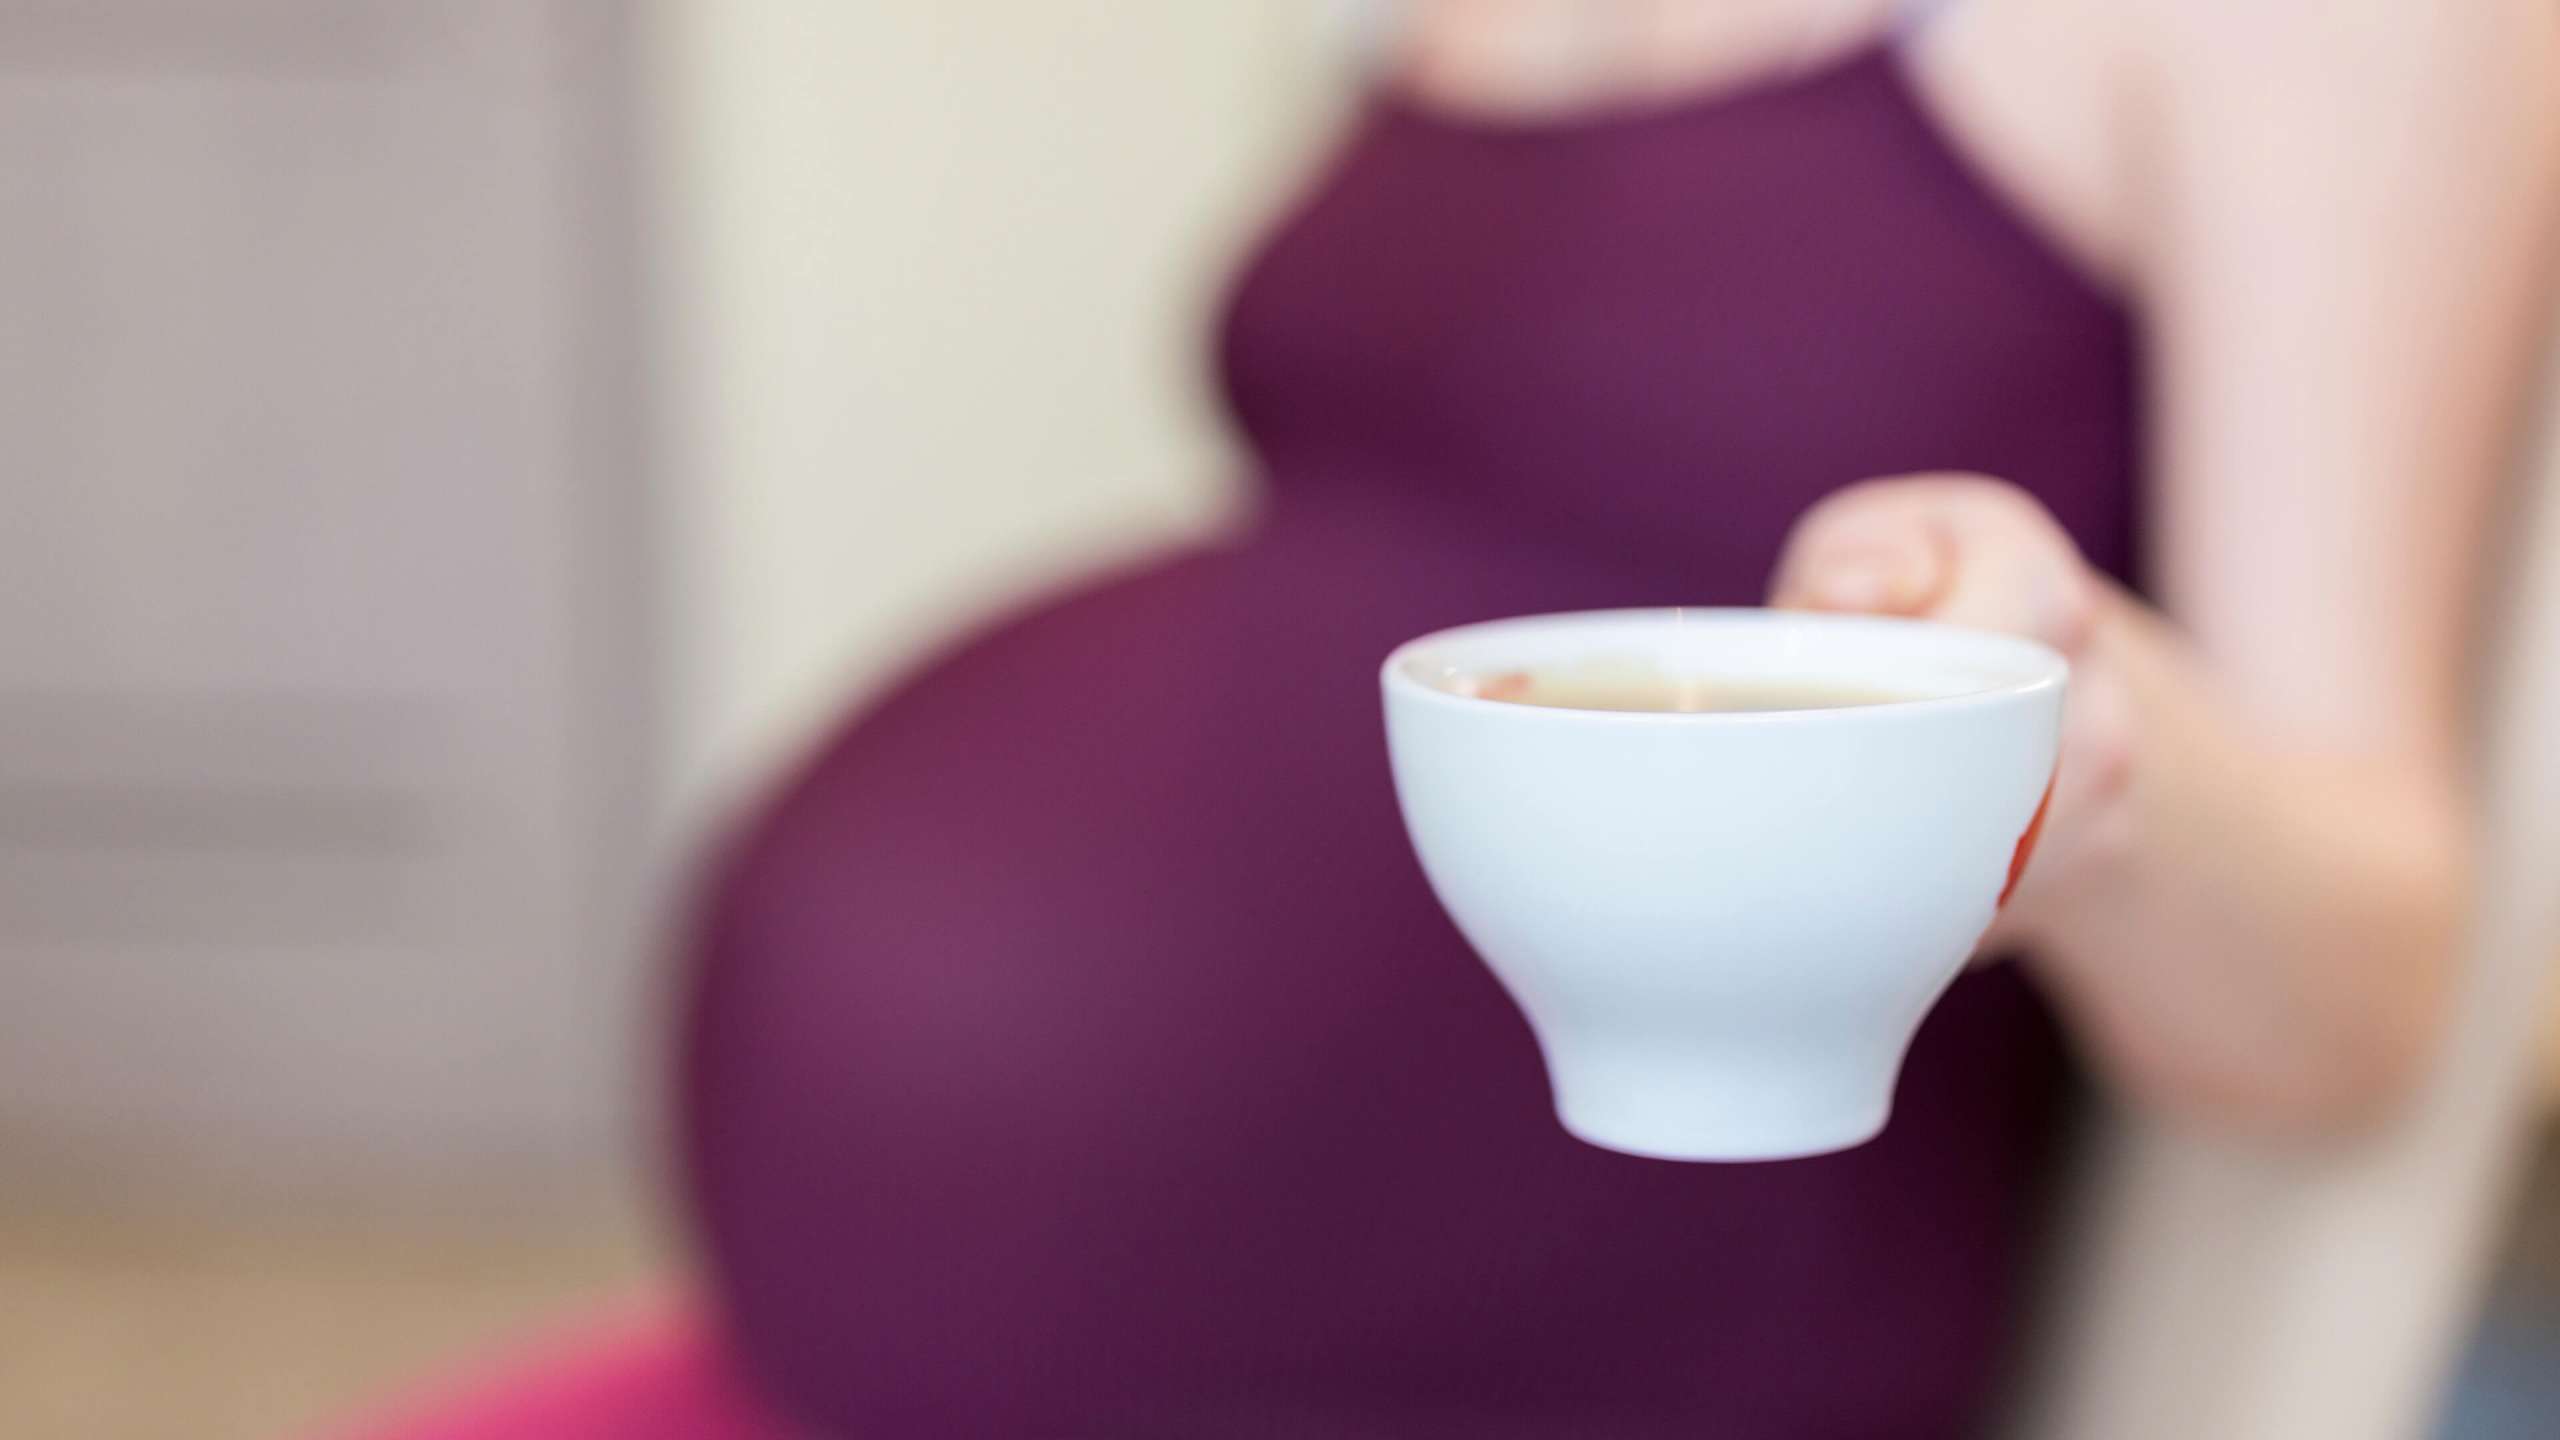 Καφεΐνη Κατά την Εγκυμοσύνη - Πώς Επηρεάζει το Ύψος του Βρέφους;